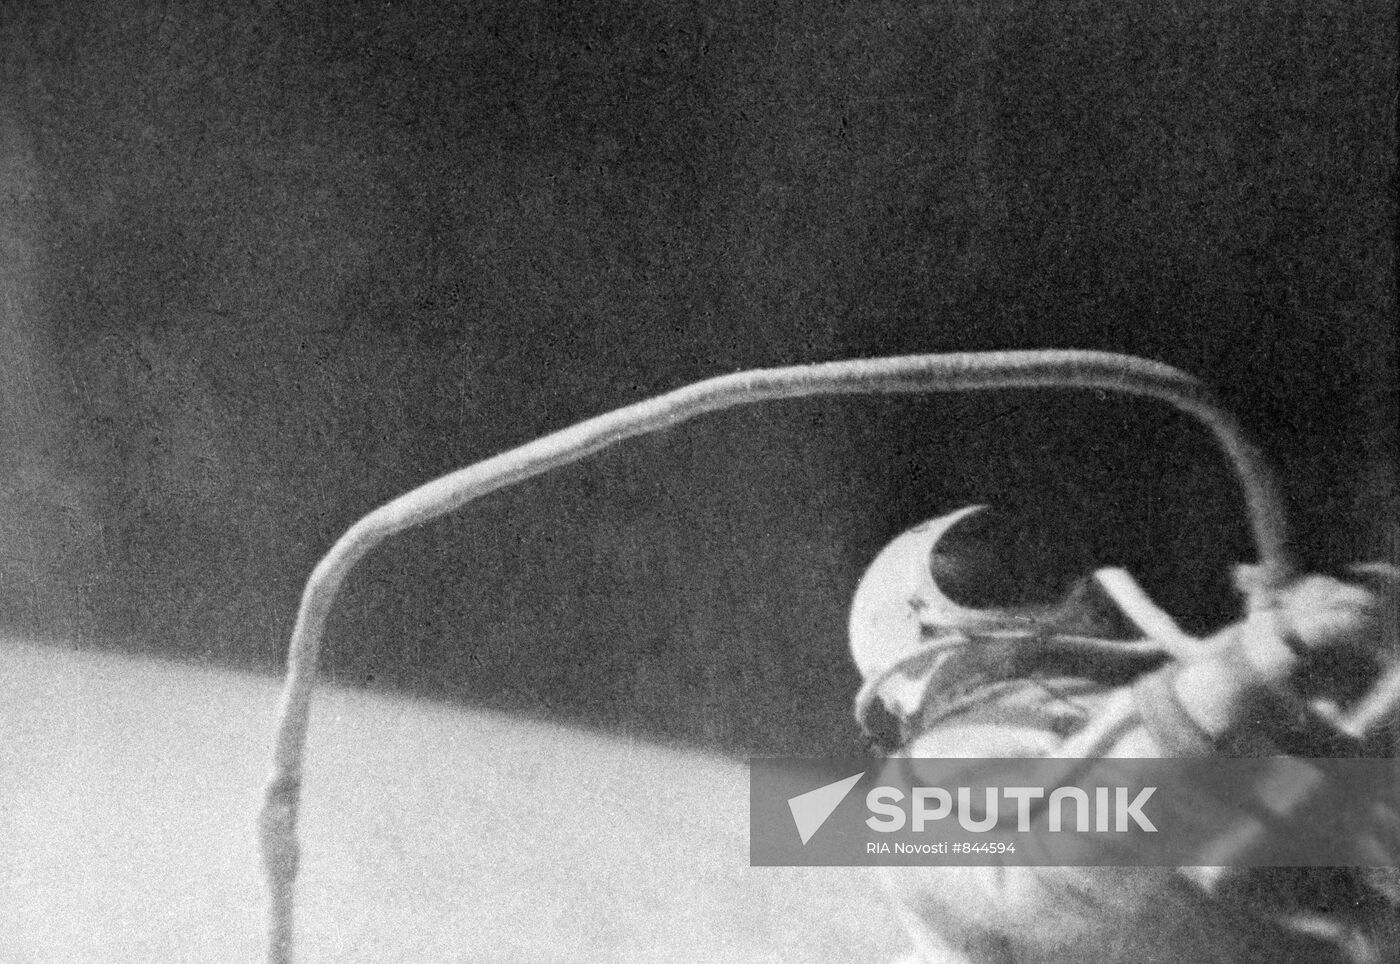 Cosmonaut Alexei Leonov takes first step into space